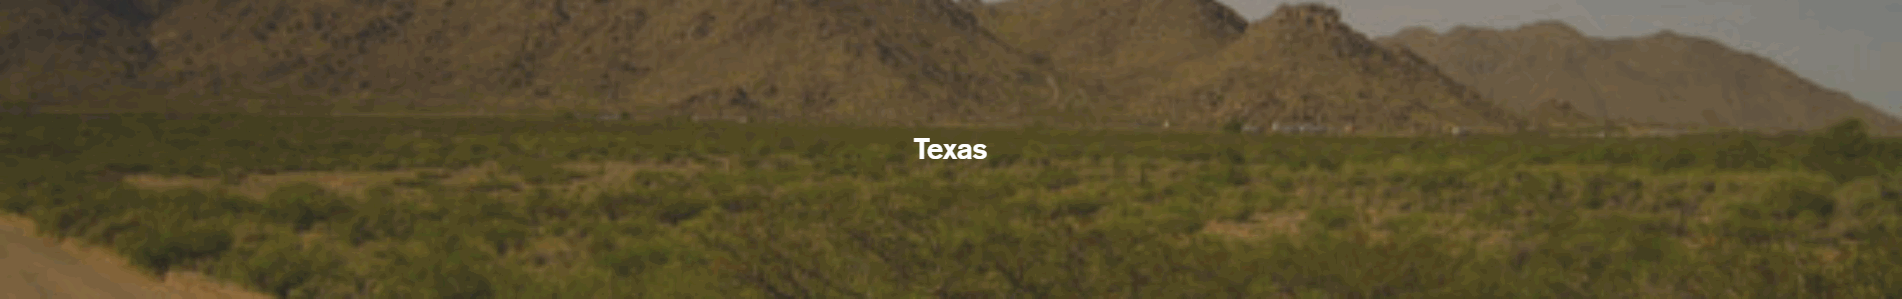 TexasPageHeader